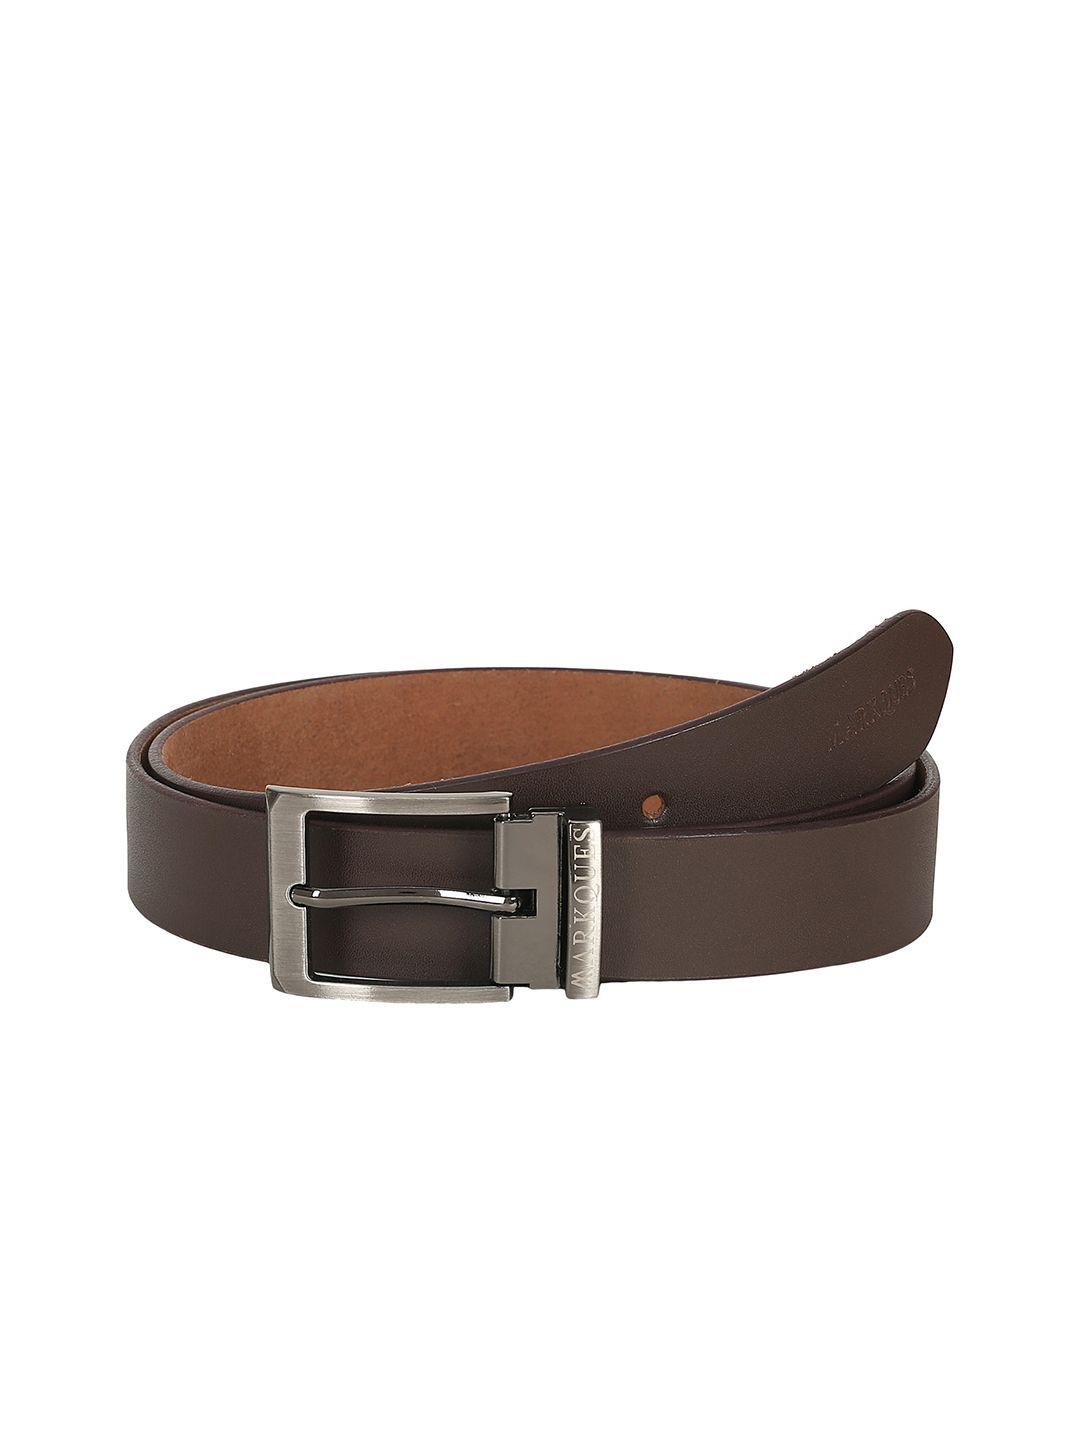 markques men brown leather formal belt